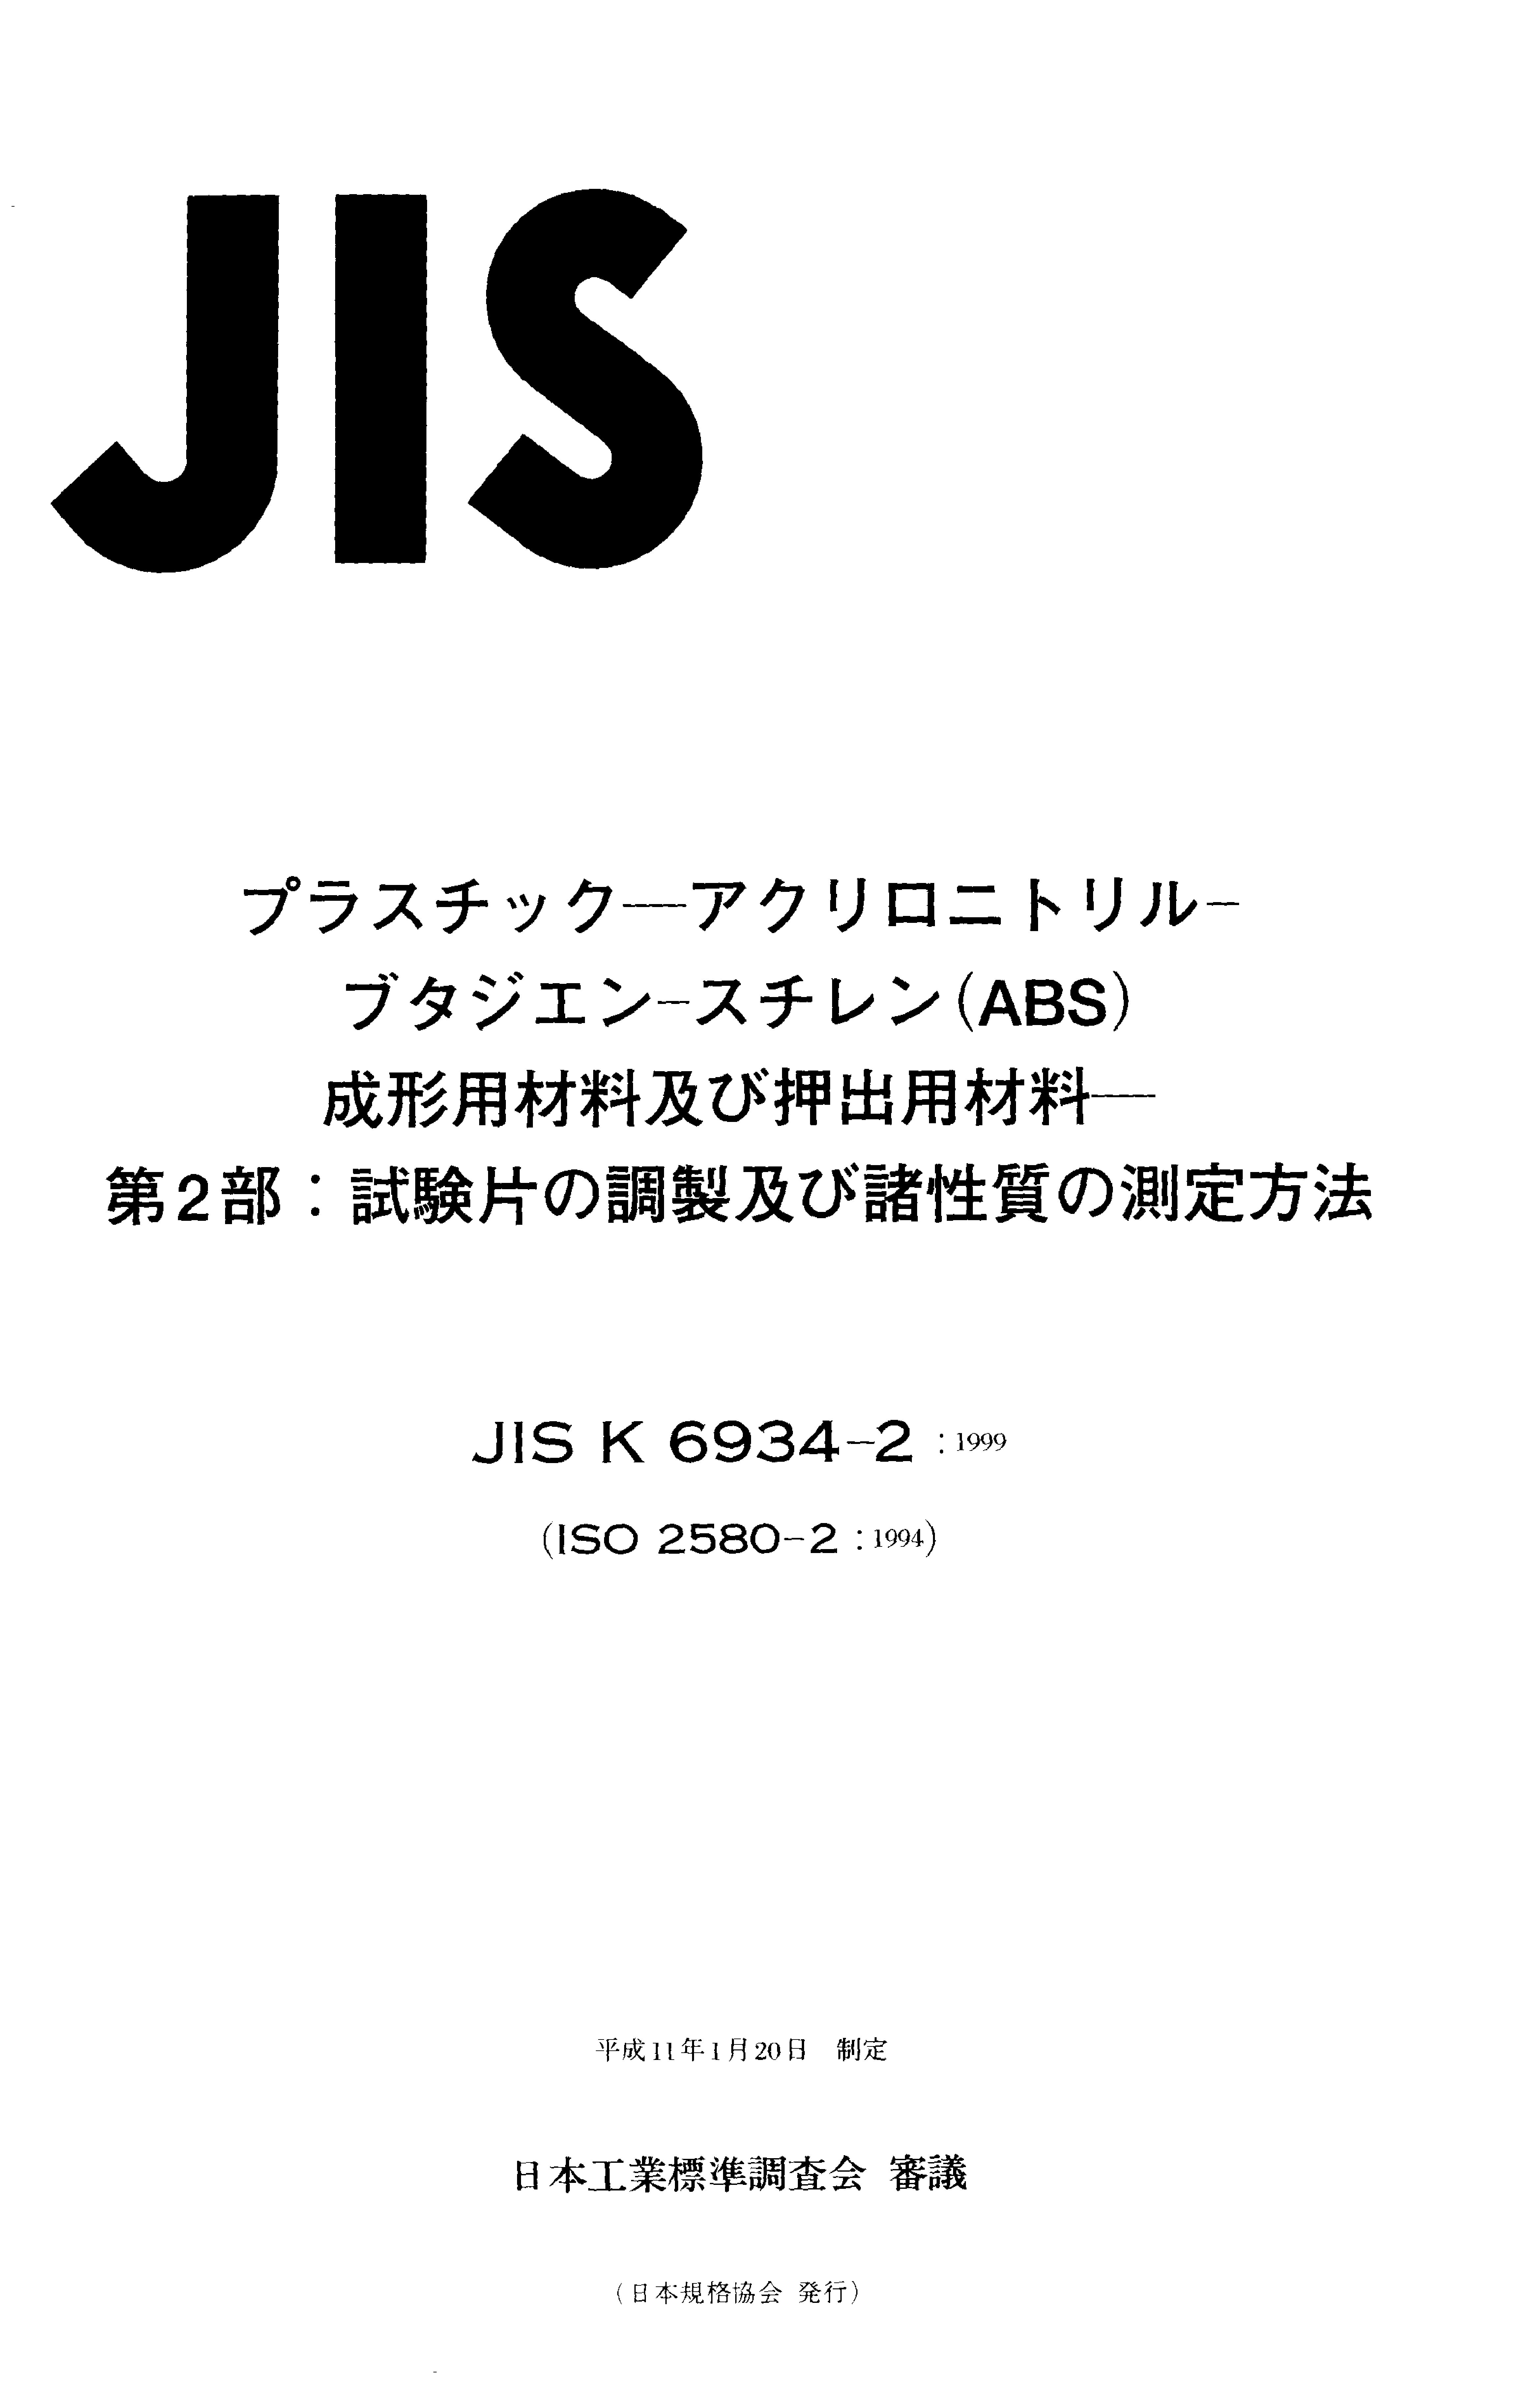 JIS K 6934-2:1999封面图